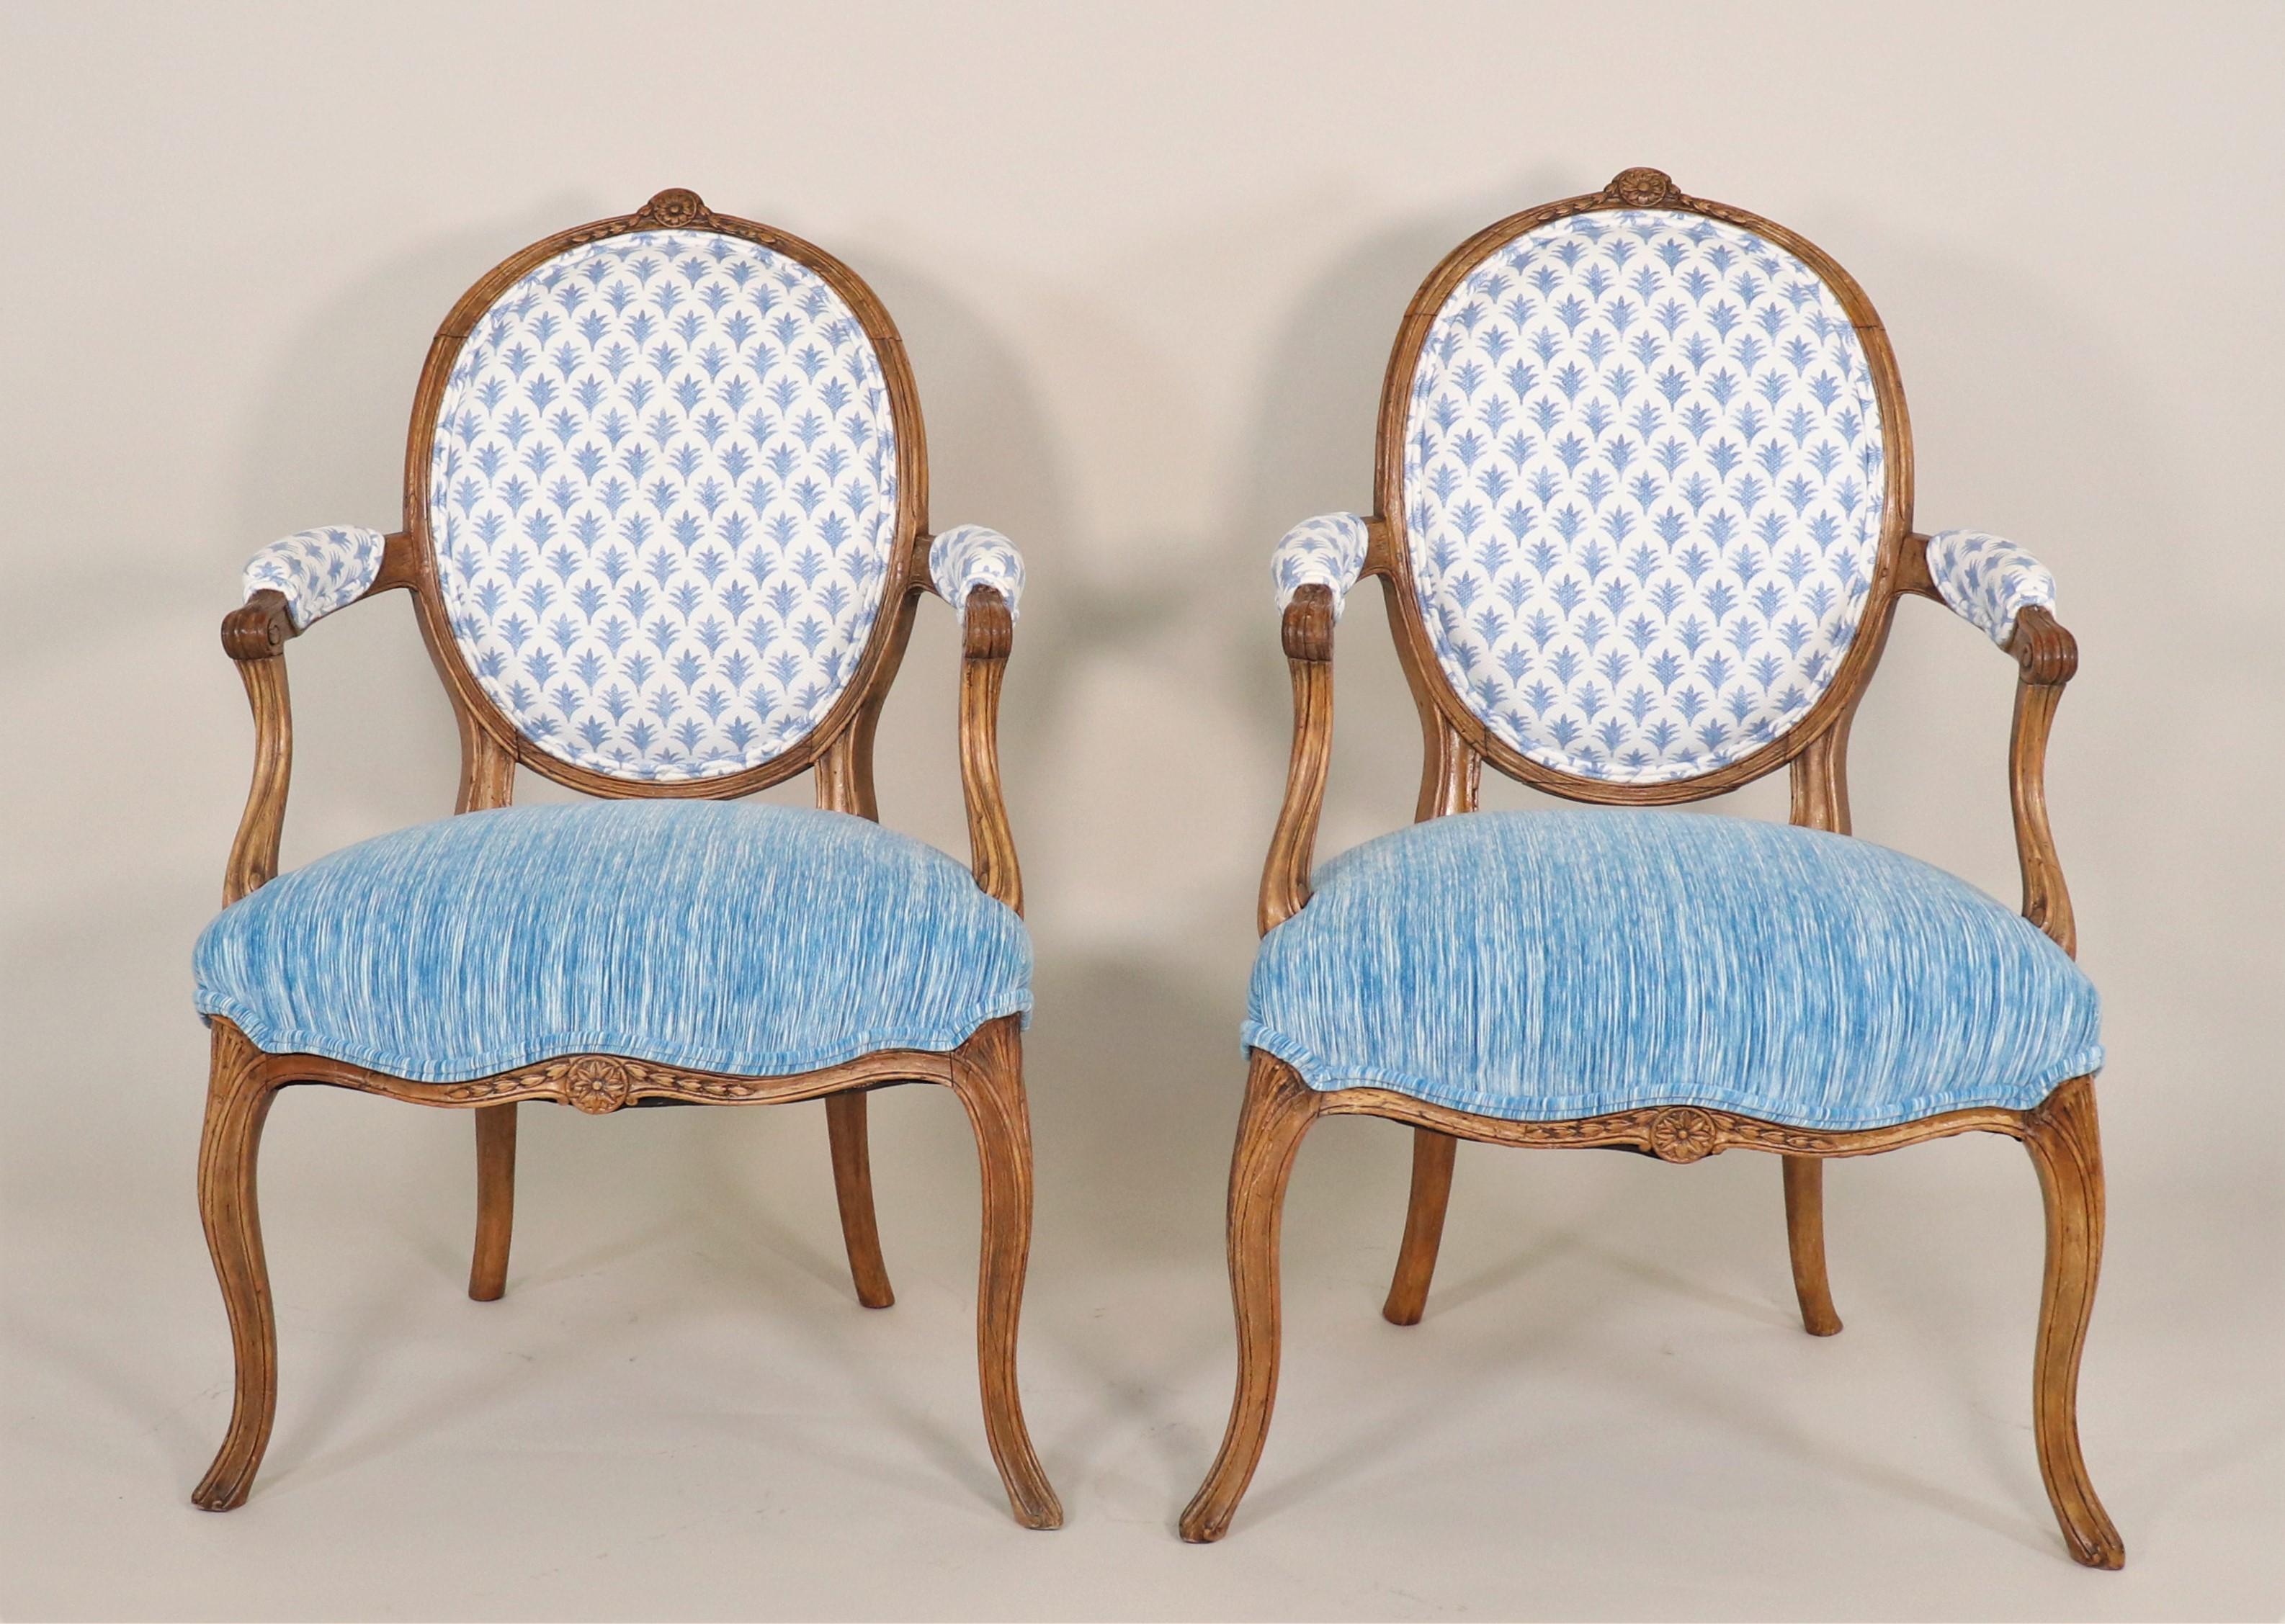 Paire de fauteuils de style Régence du milieu du 19e siècle : pleins de charme français, ces fauteuils de style Régence ont été remis au goût du jour avec des tissus modernes qui restent dans l'esprit de l'époque. La Régence française est une brève